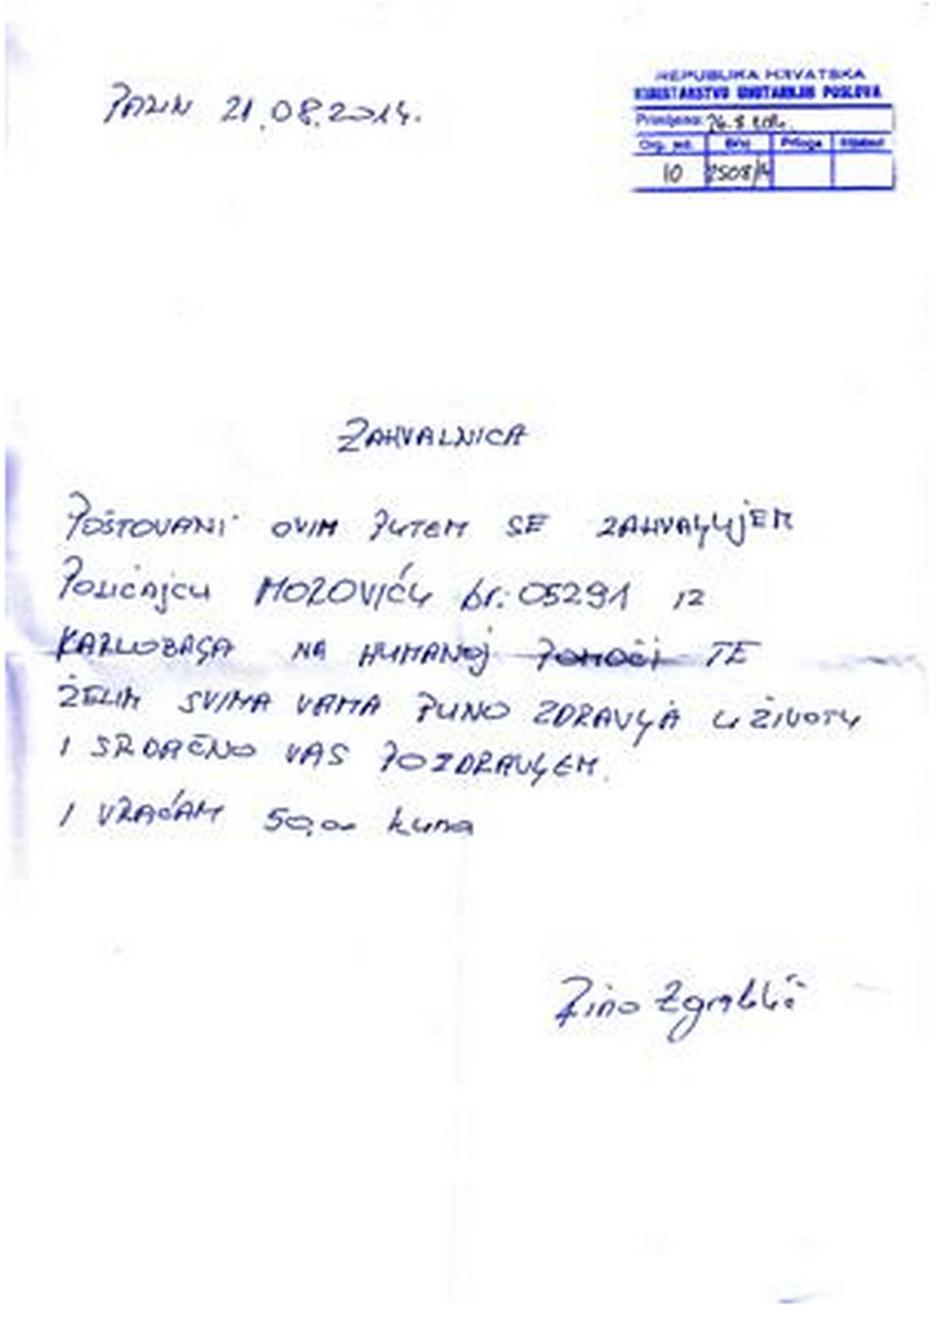 pismo zahvale,Nikola Morović,Rino Žgrablić